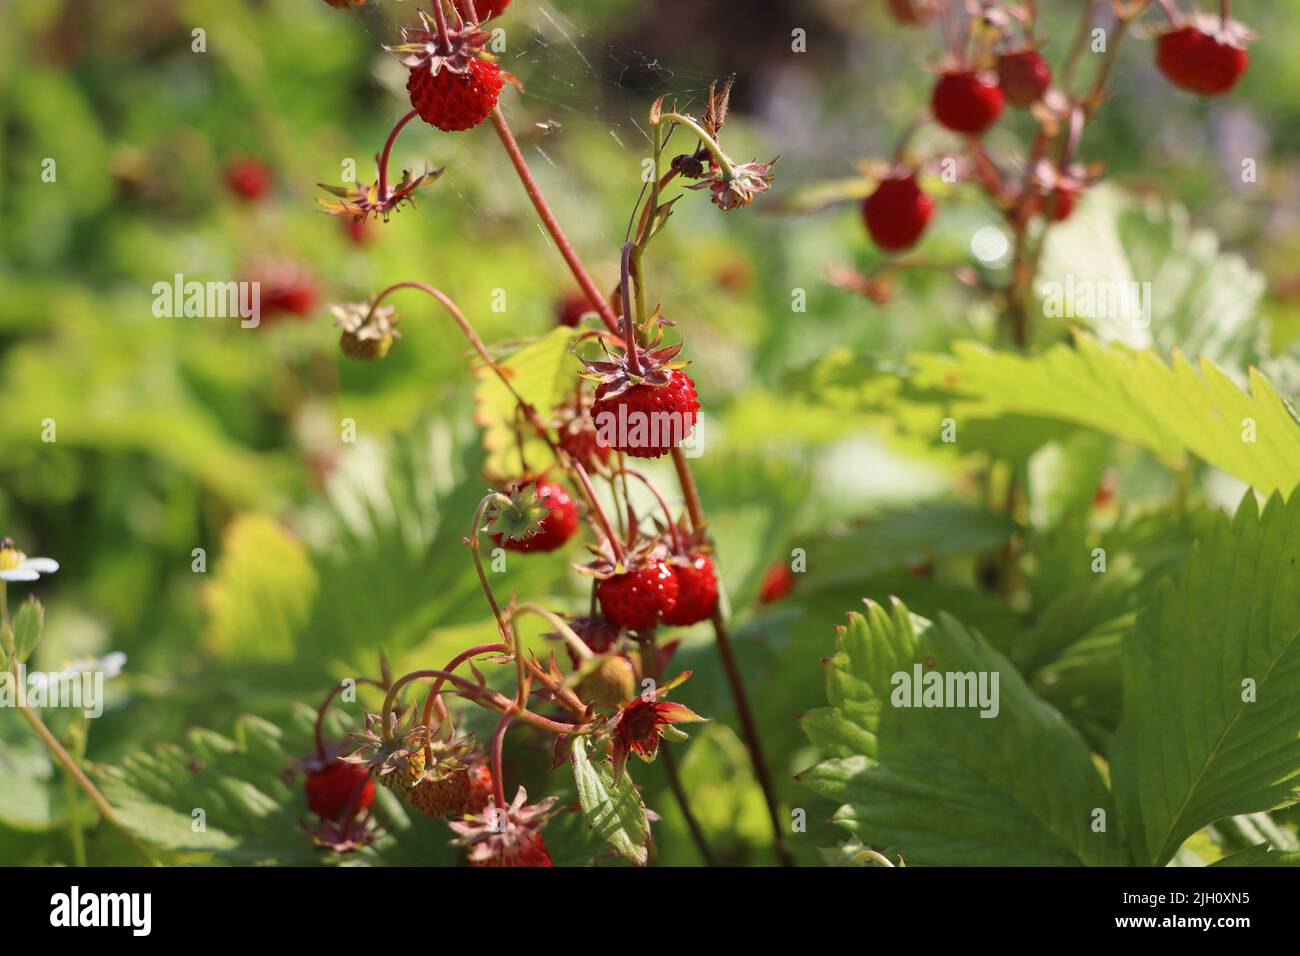 Brousse sauvage de fraises en forêt. Fraises rouges, baies et fleurs blanches dans un pré sauvage, gros plan Banque D'Images